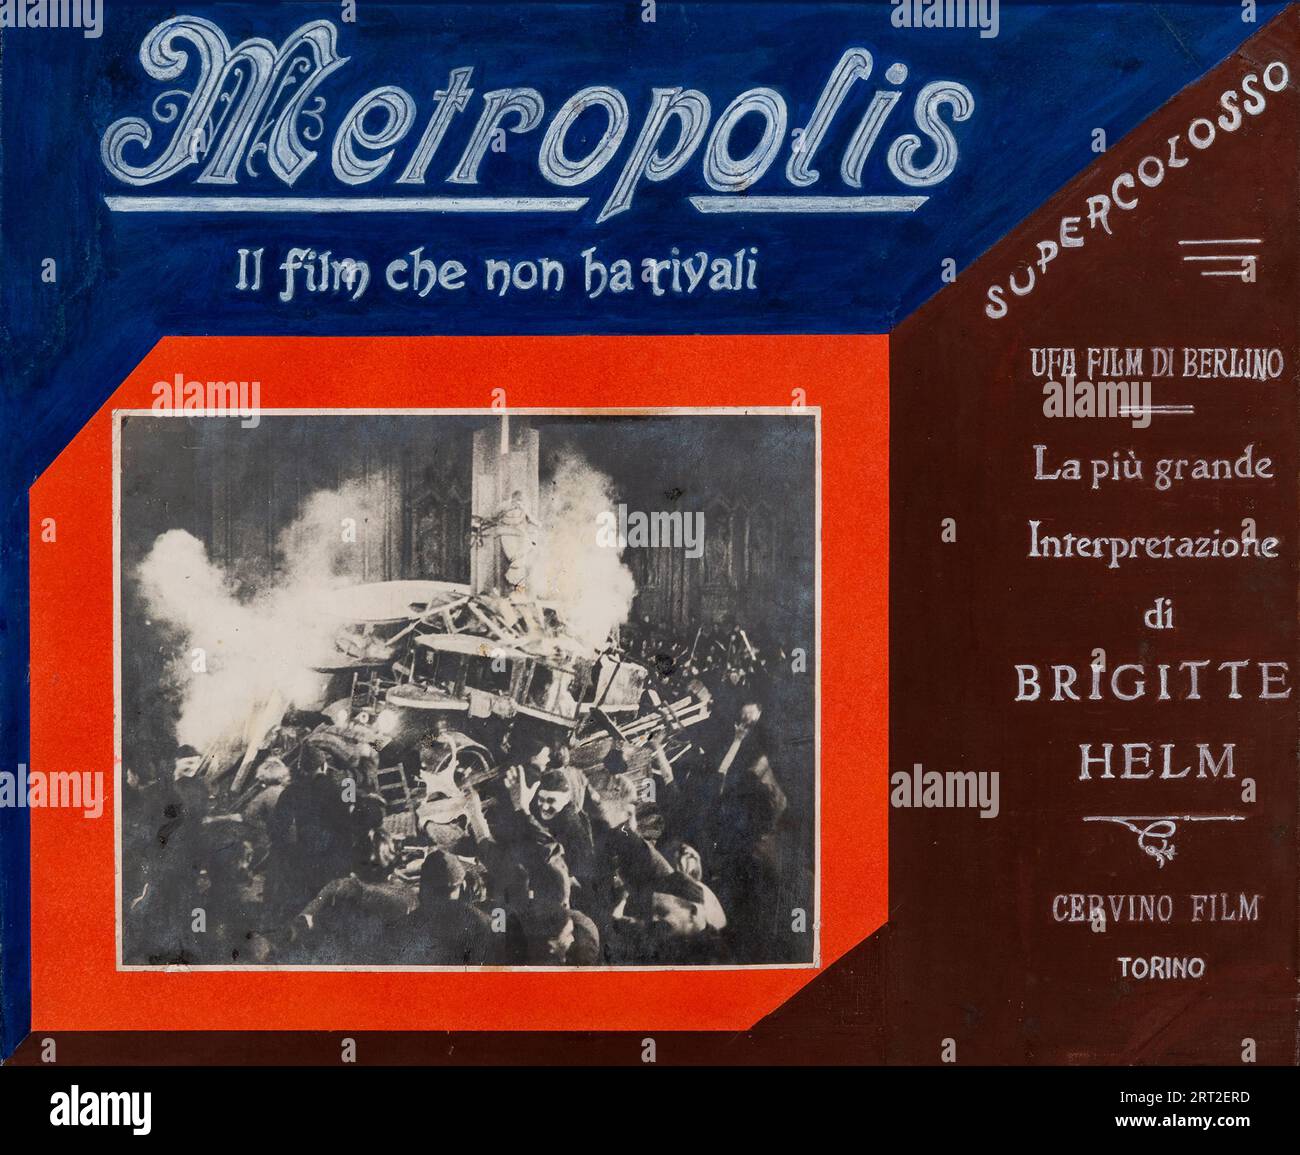 Affiche de film "Metropolis" de Fritz Lang, 1927. Collection privée. Banque D'Images